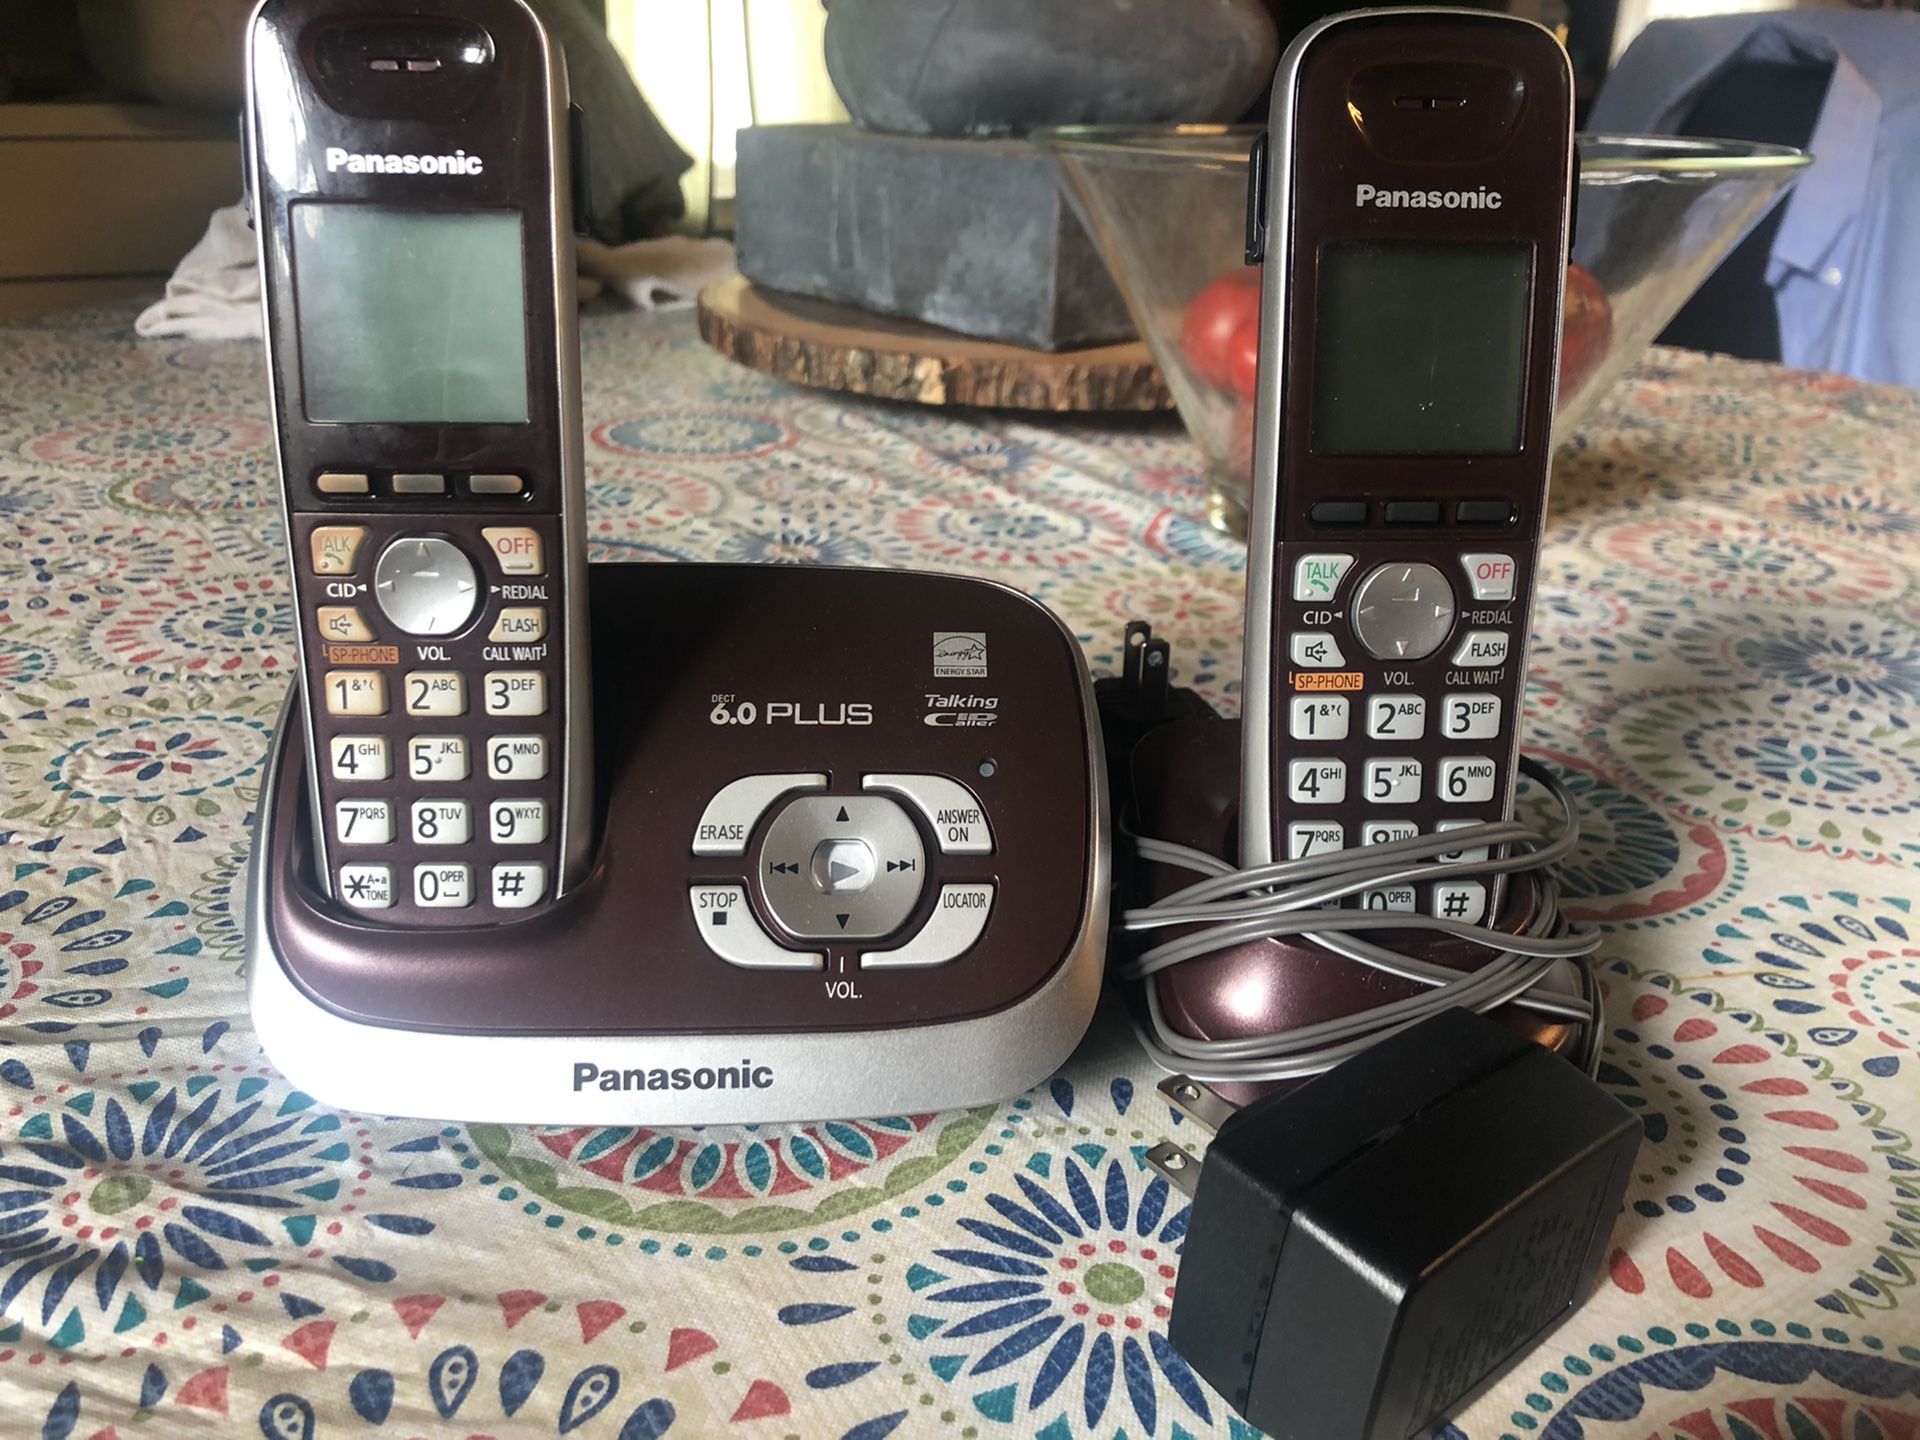 Panasonic wireless phones